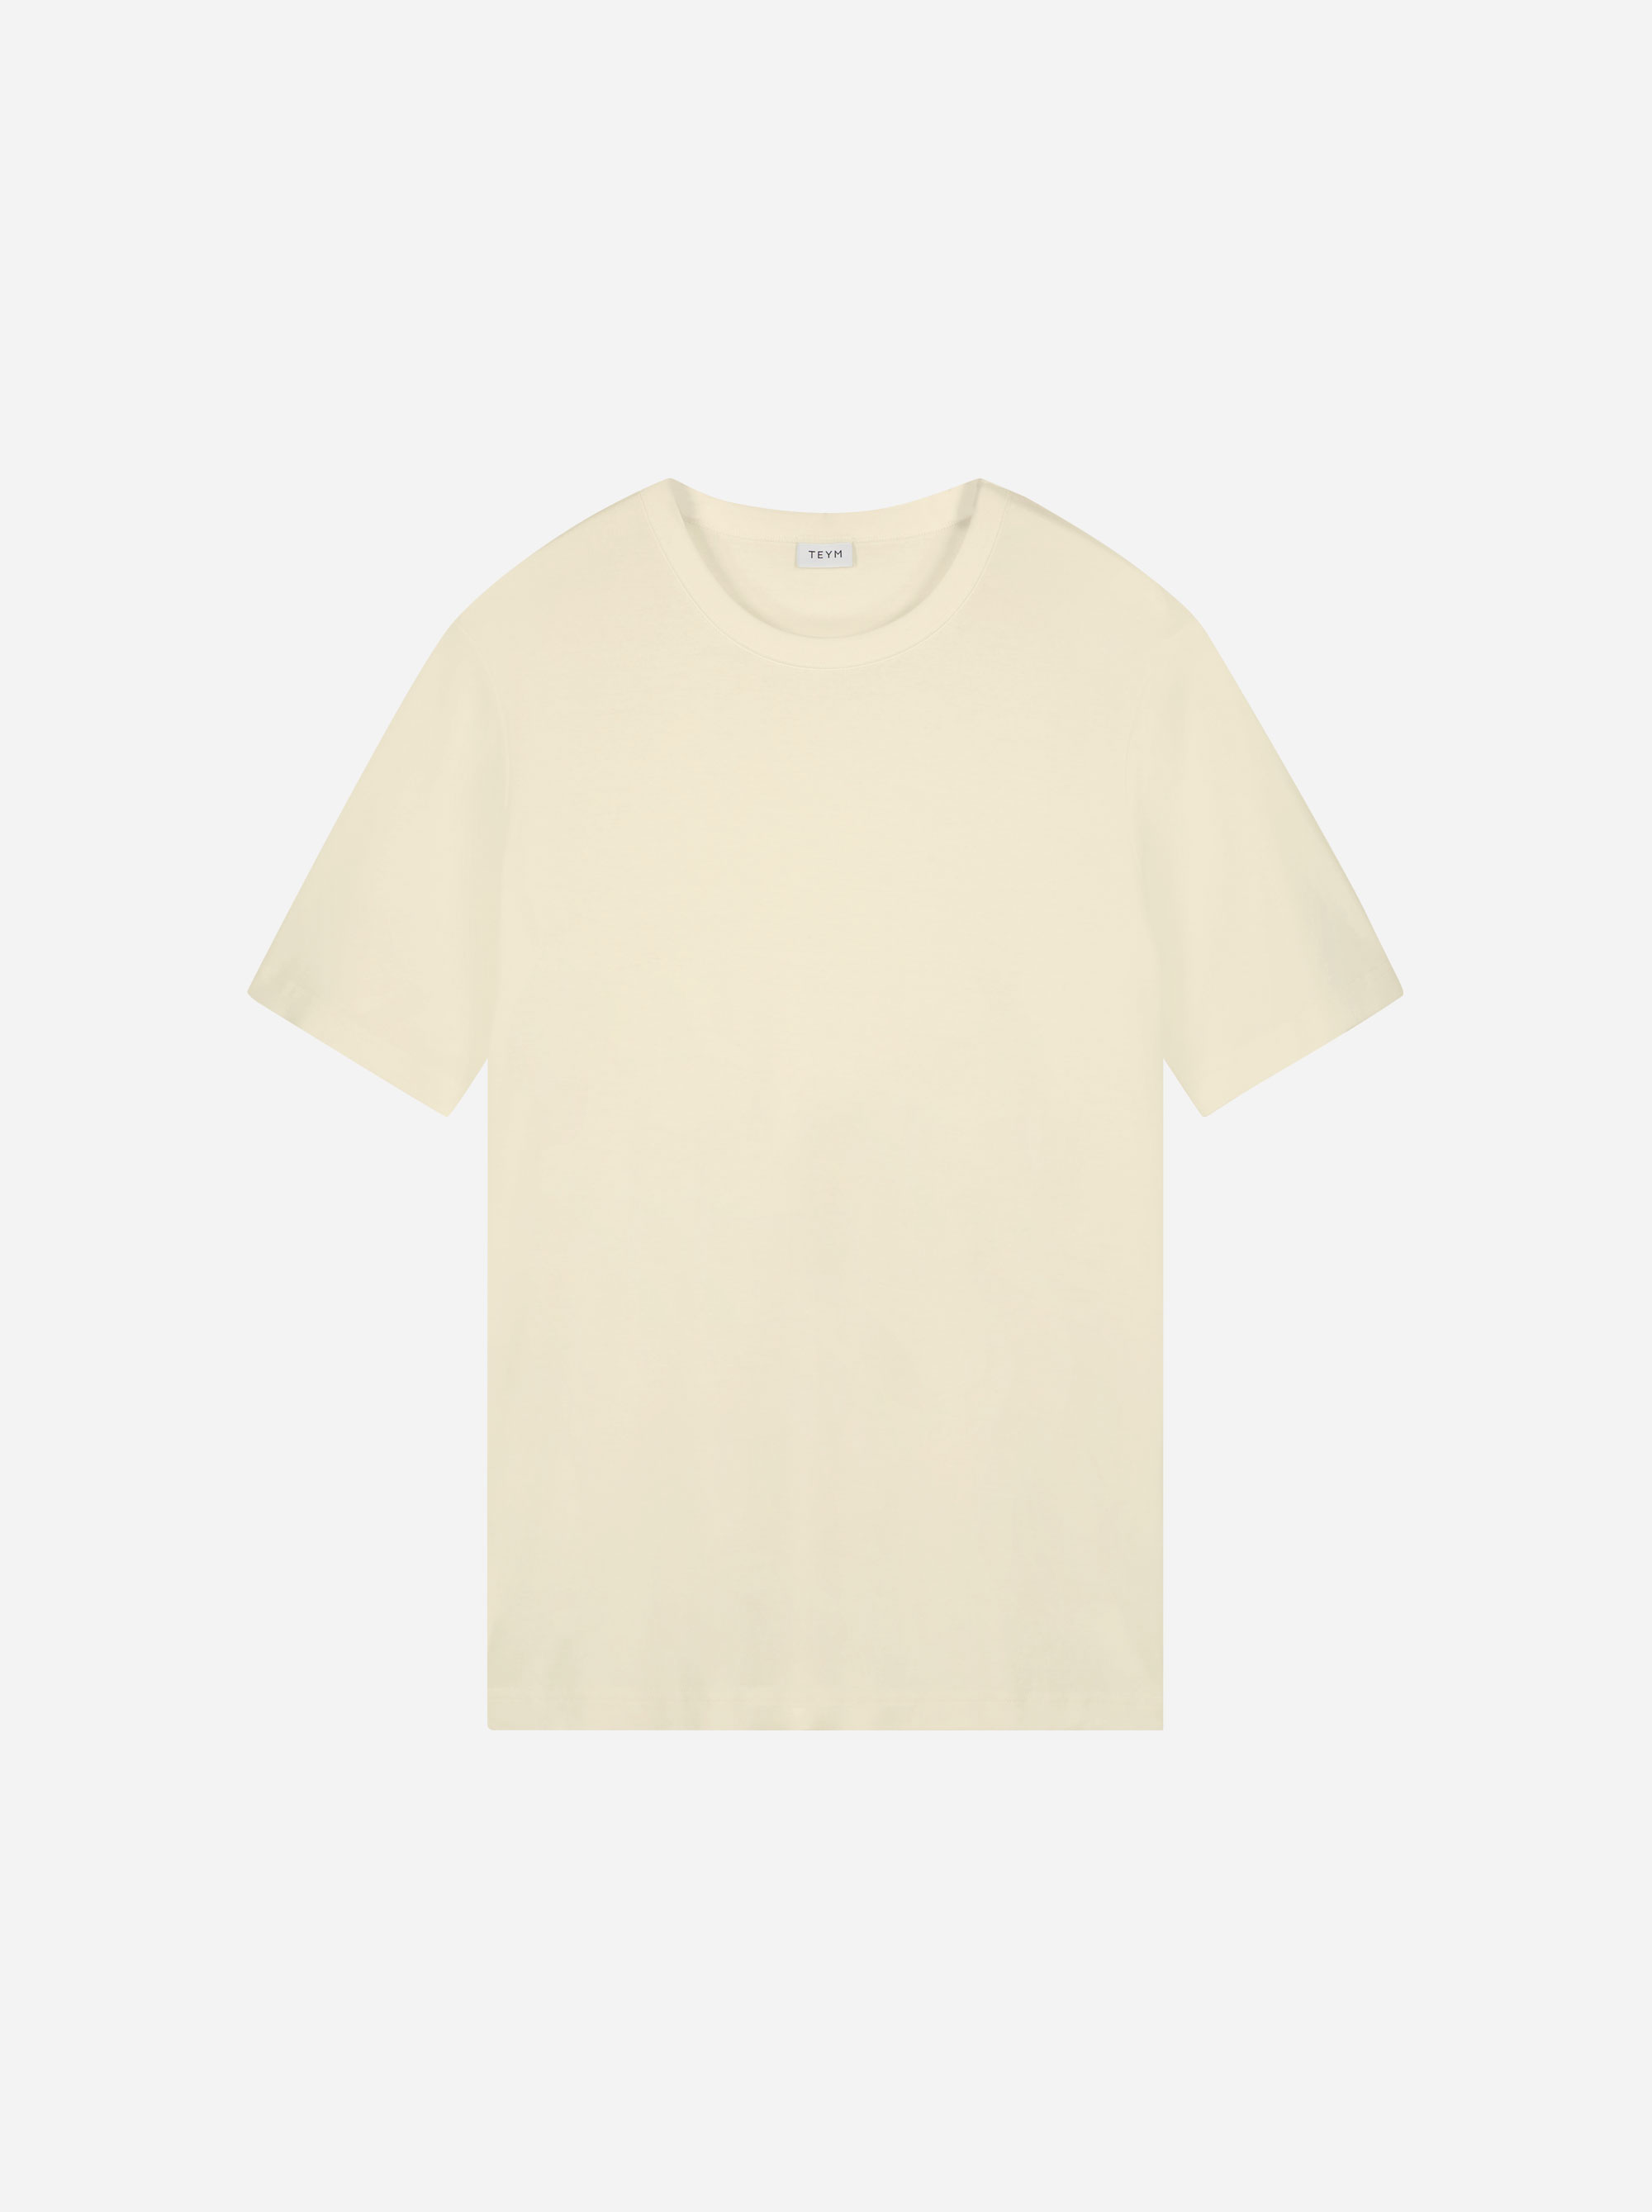 Teym - The T-Shirt - Men - Off-white - 3